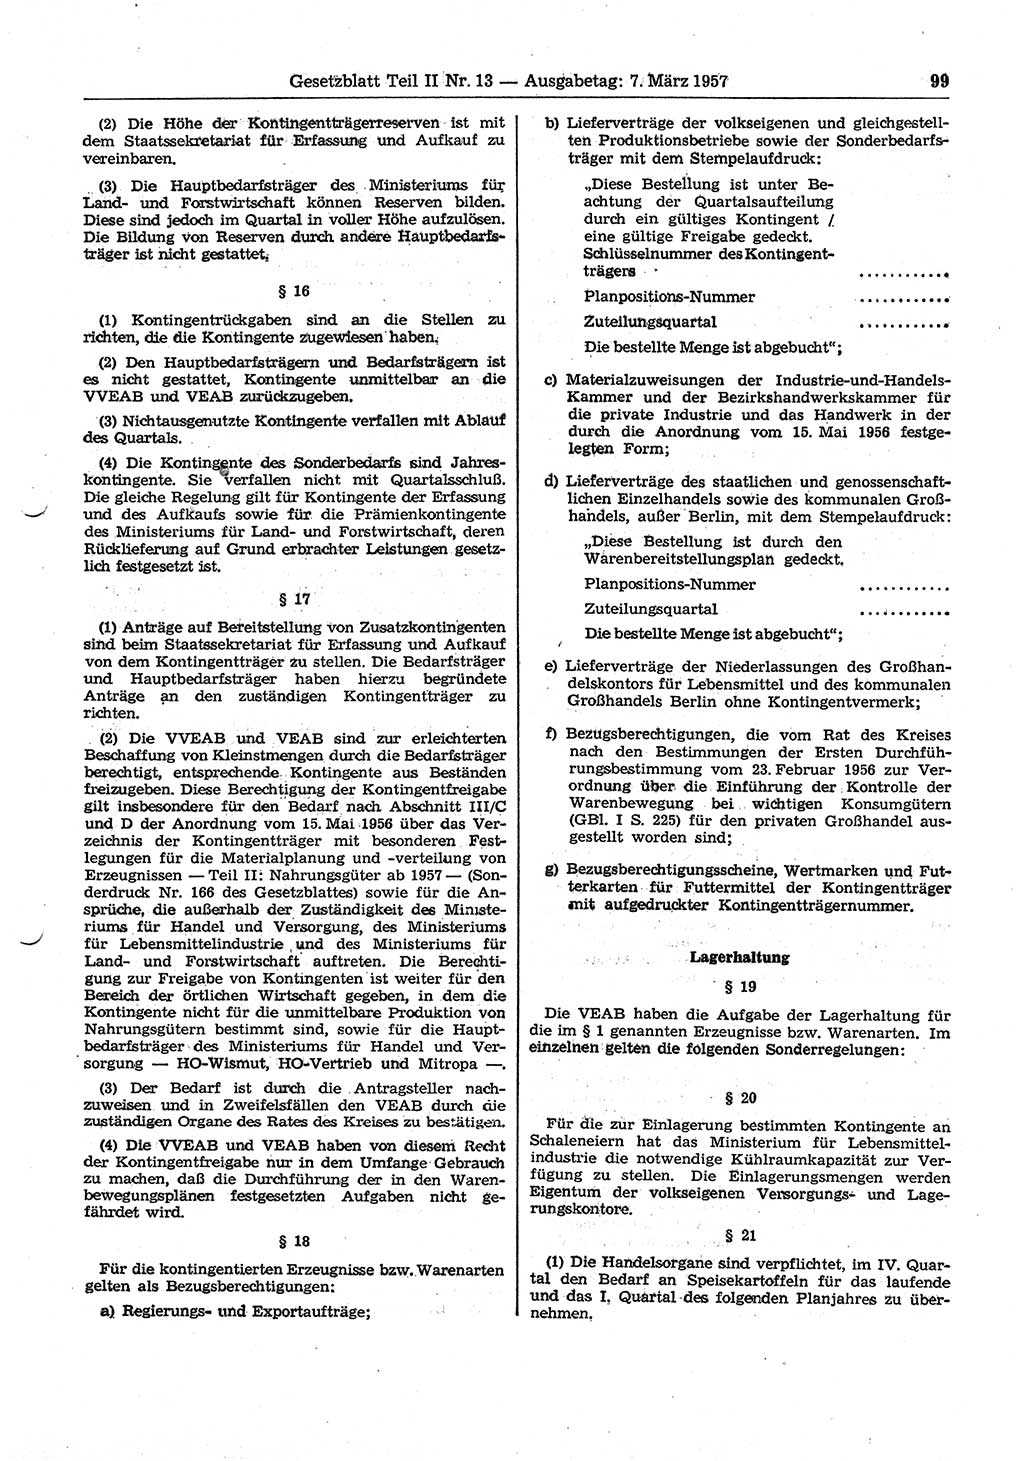 Gesetzblatt (GBl.) der Deutschen Demokratischen Republik (DDR) Teil ⅠⅠ 1957, Seite 99 (GBl. DDR ⅠⅠ 1957, S. 99)